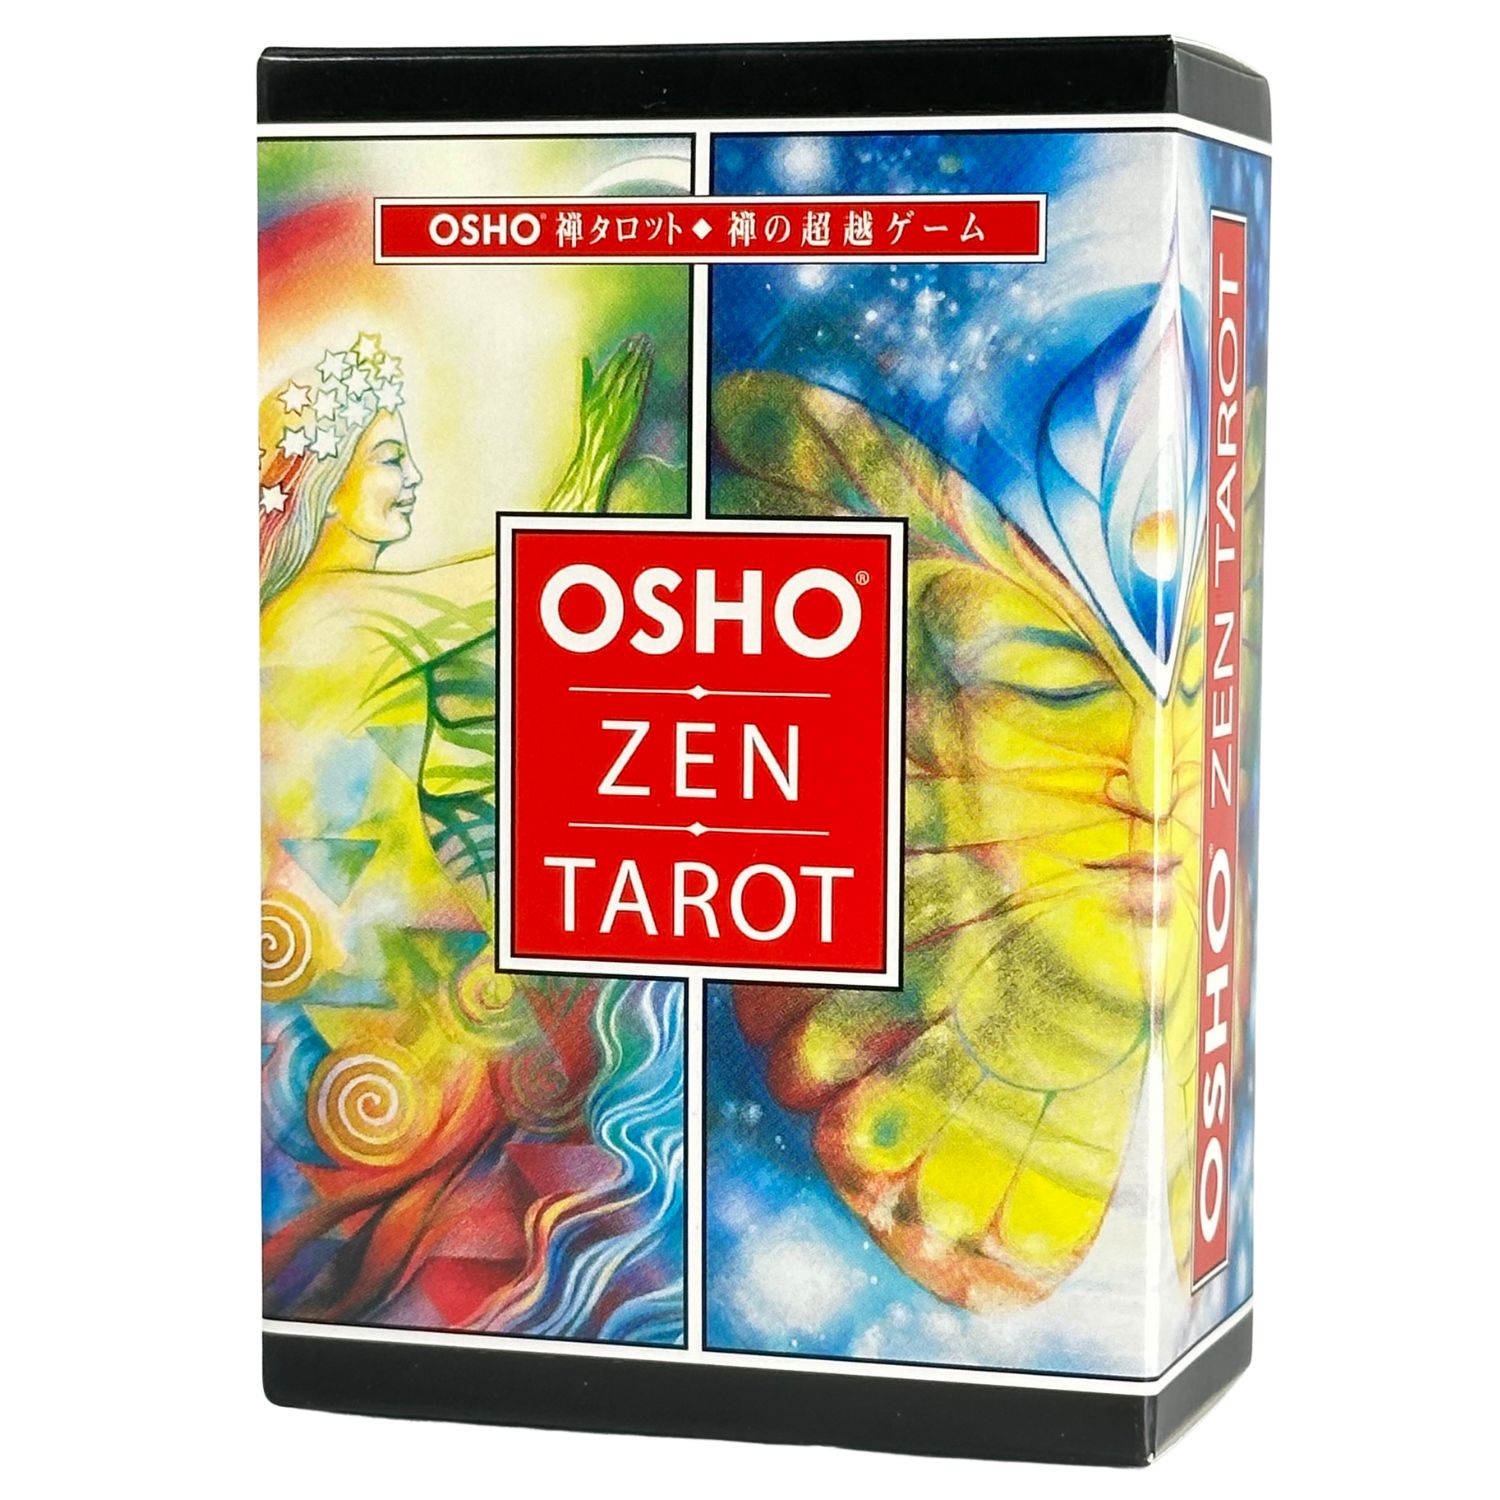 タロットカード 和尚禅タロット 日本語版 OSHO ZEN TAROT : p3mh3cn3dv 